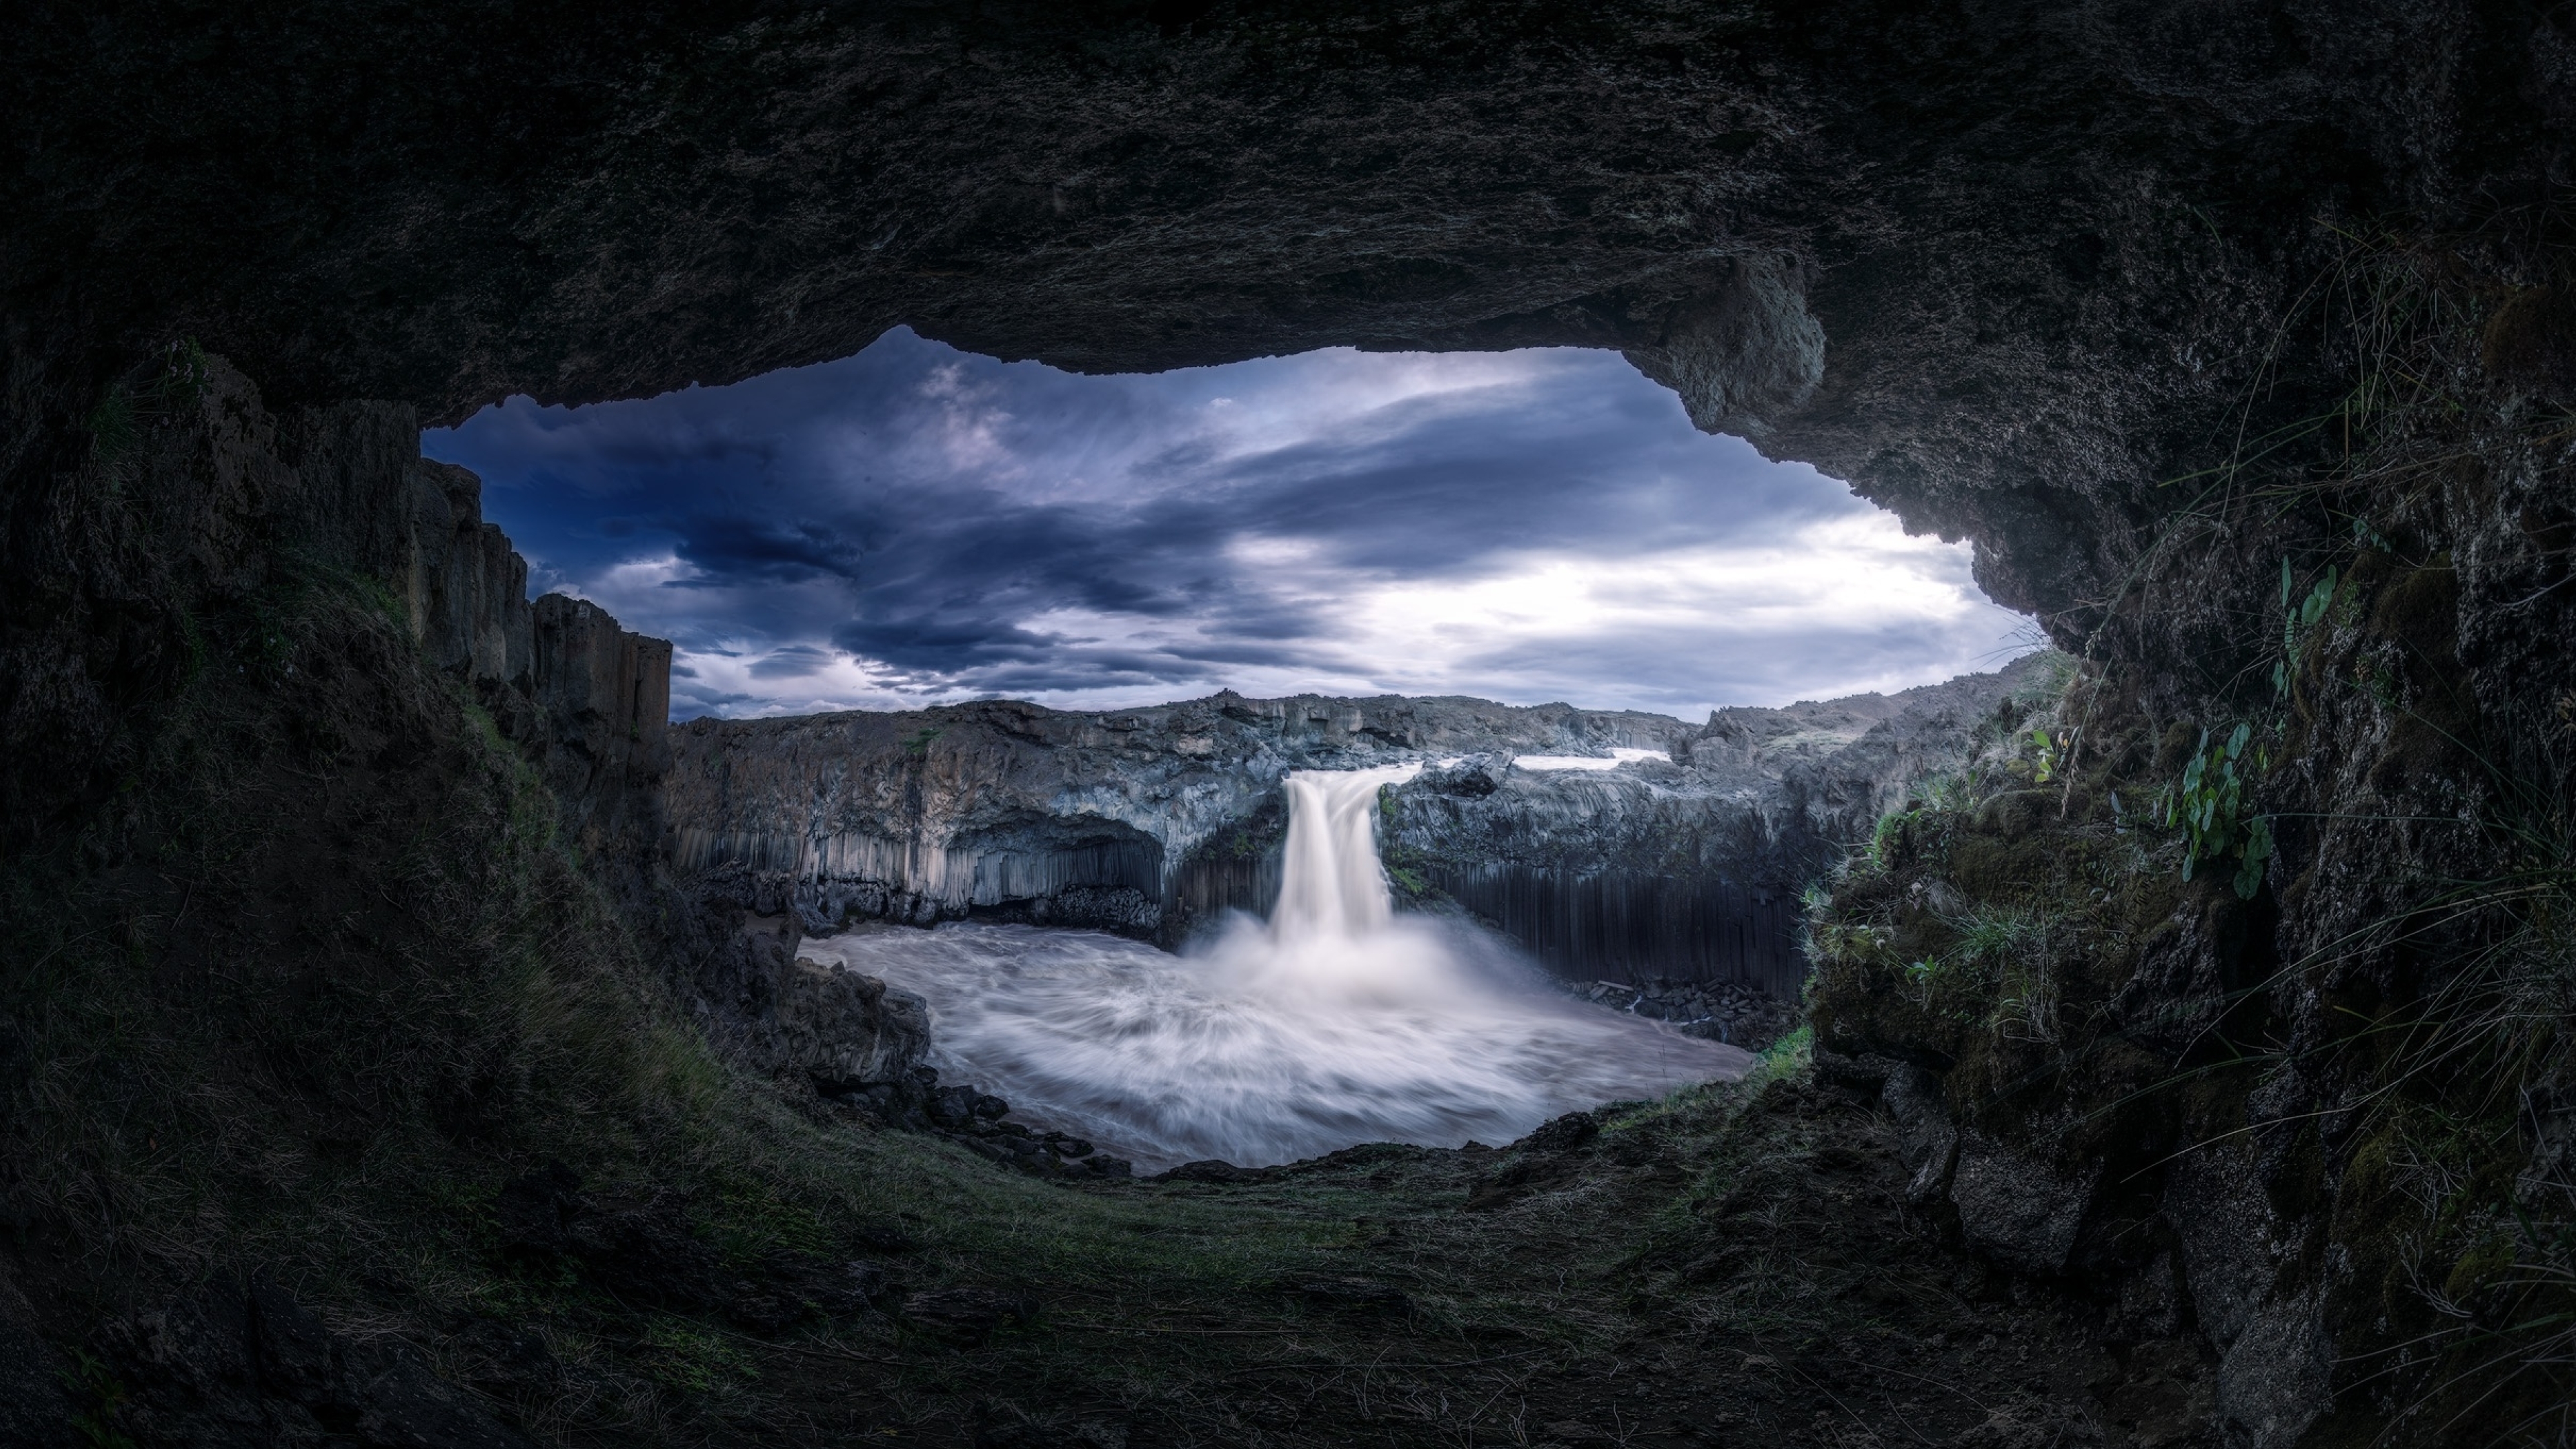 دانلود عکس حرفه ای طبیعت زیبا واقعی منظره آبشار از درون غار